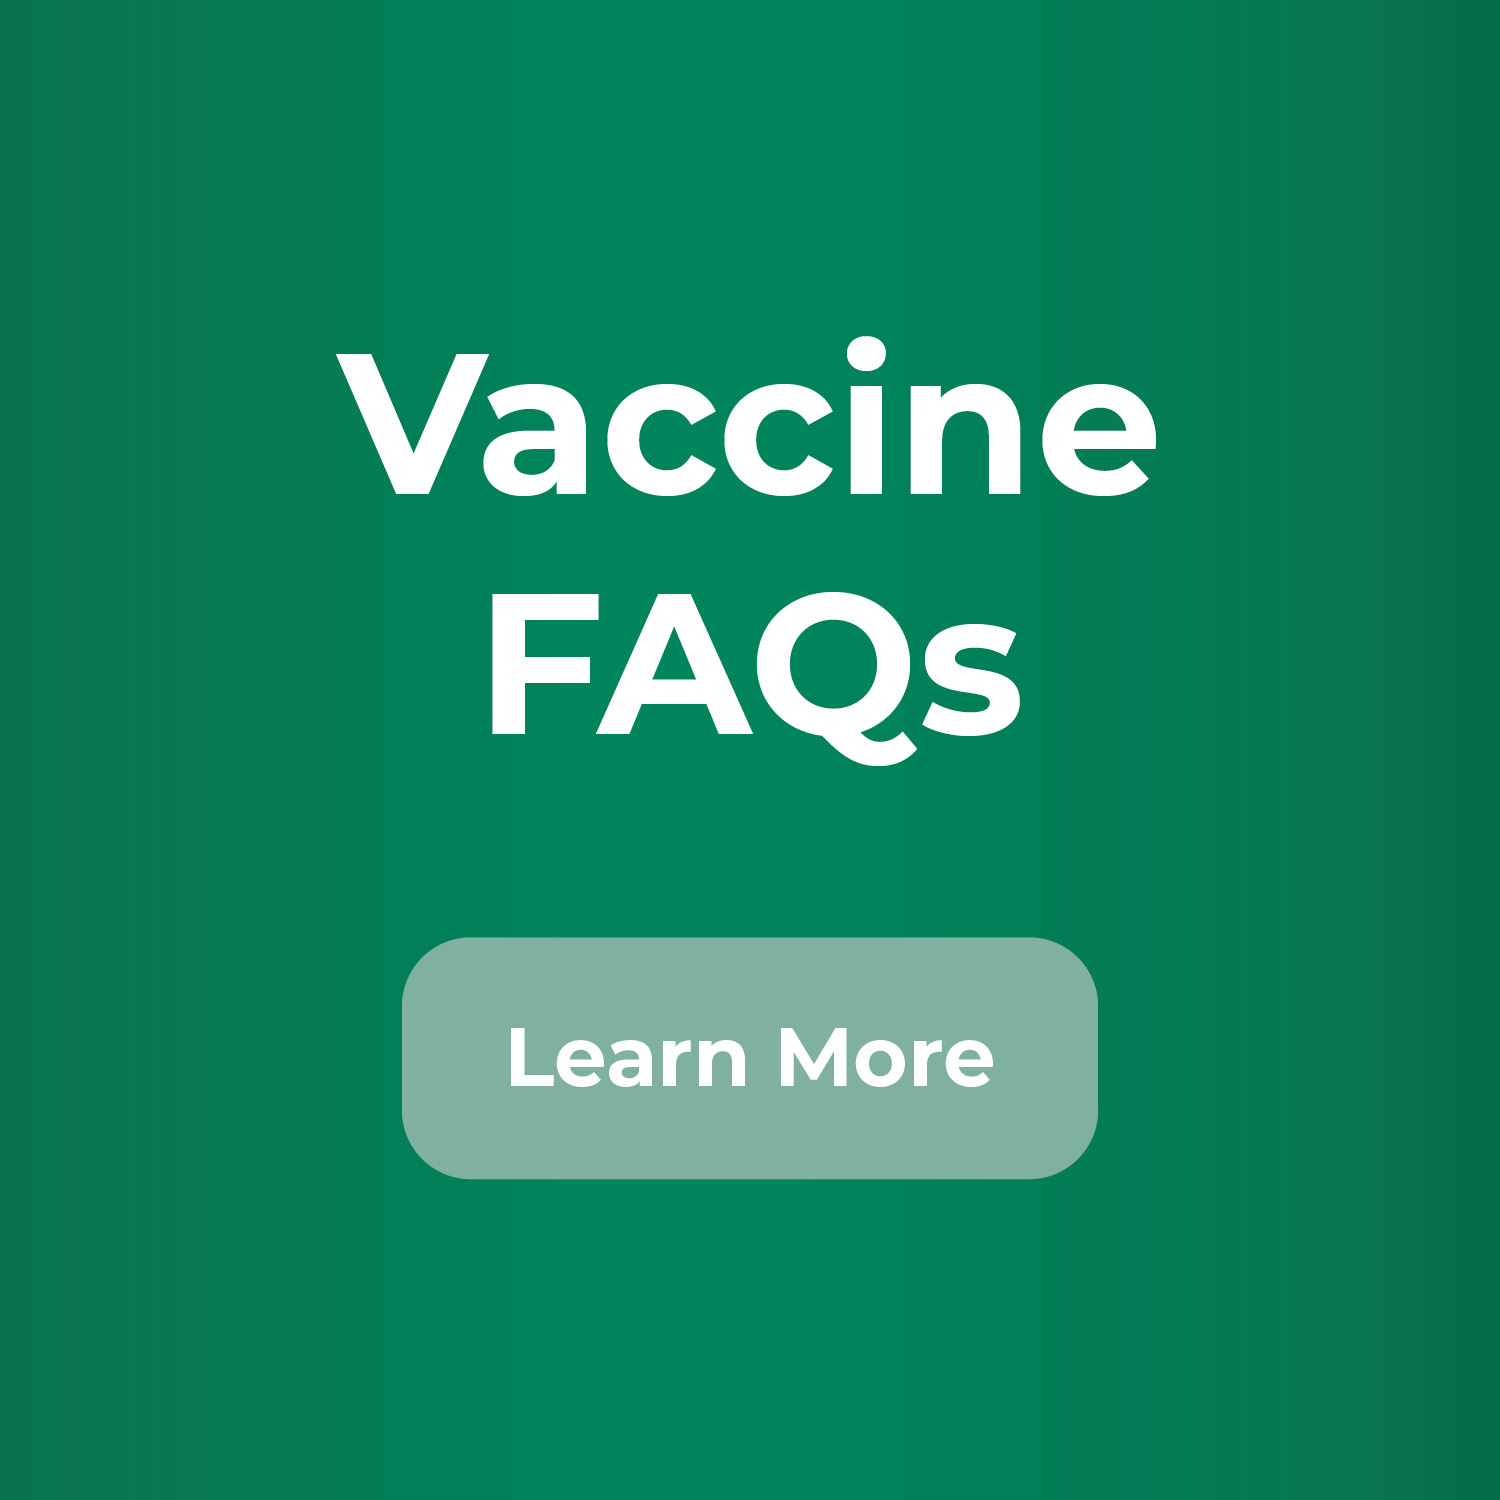 Vaccine FAQs